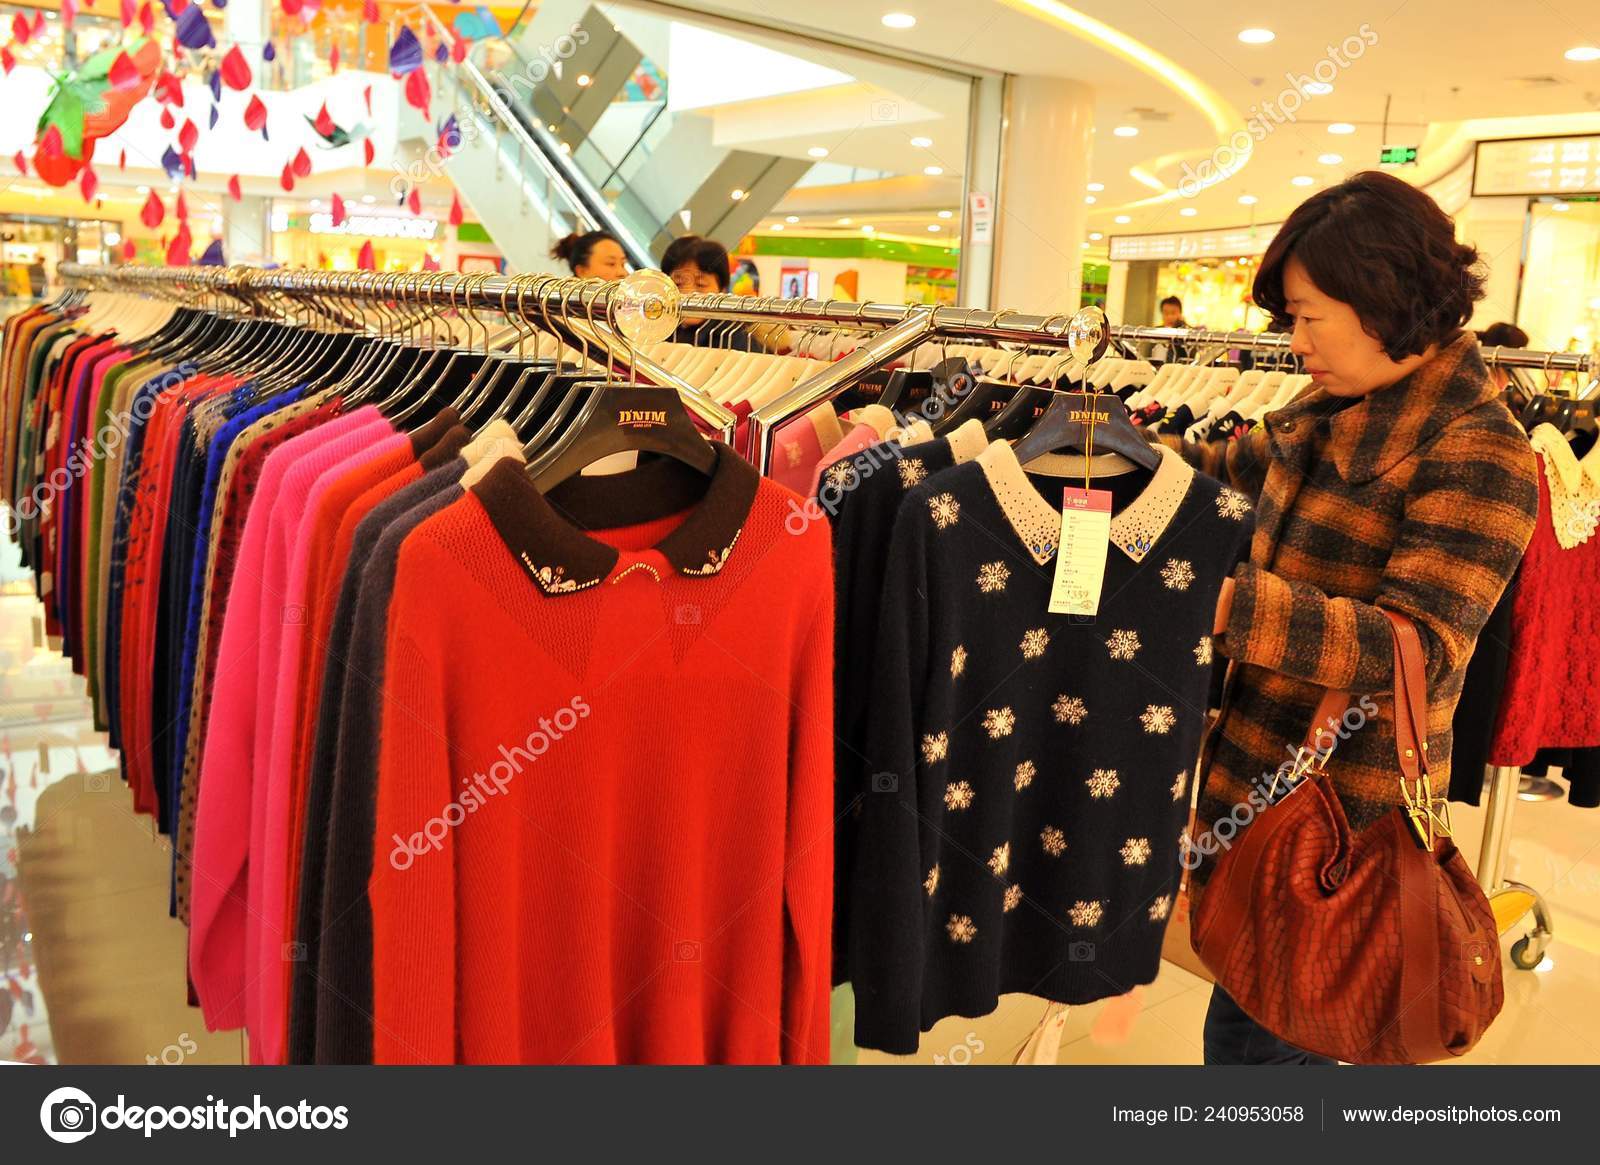 Watchful champion jeg fandt det Kunde Køber Tøj Indkøbscenter Qingdao Øst Kinas Shandong Provins December –  Redaktionelle stock-fotos © ChinaImages #240953058